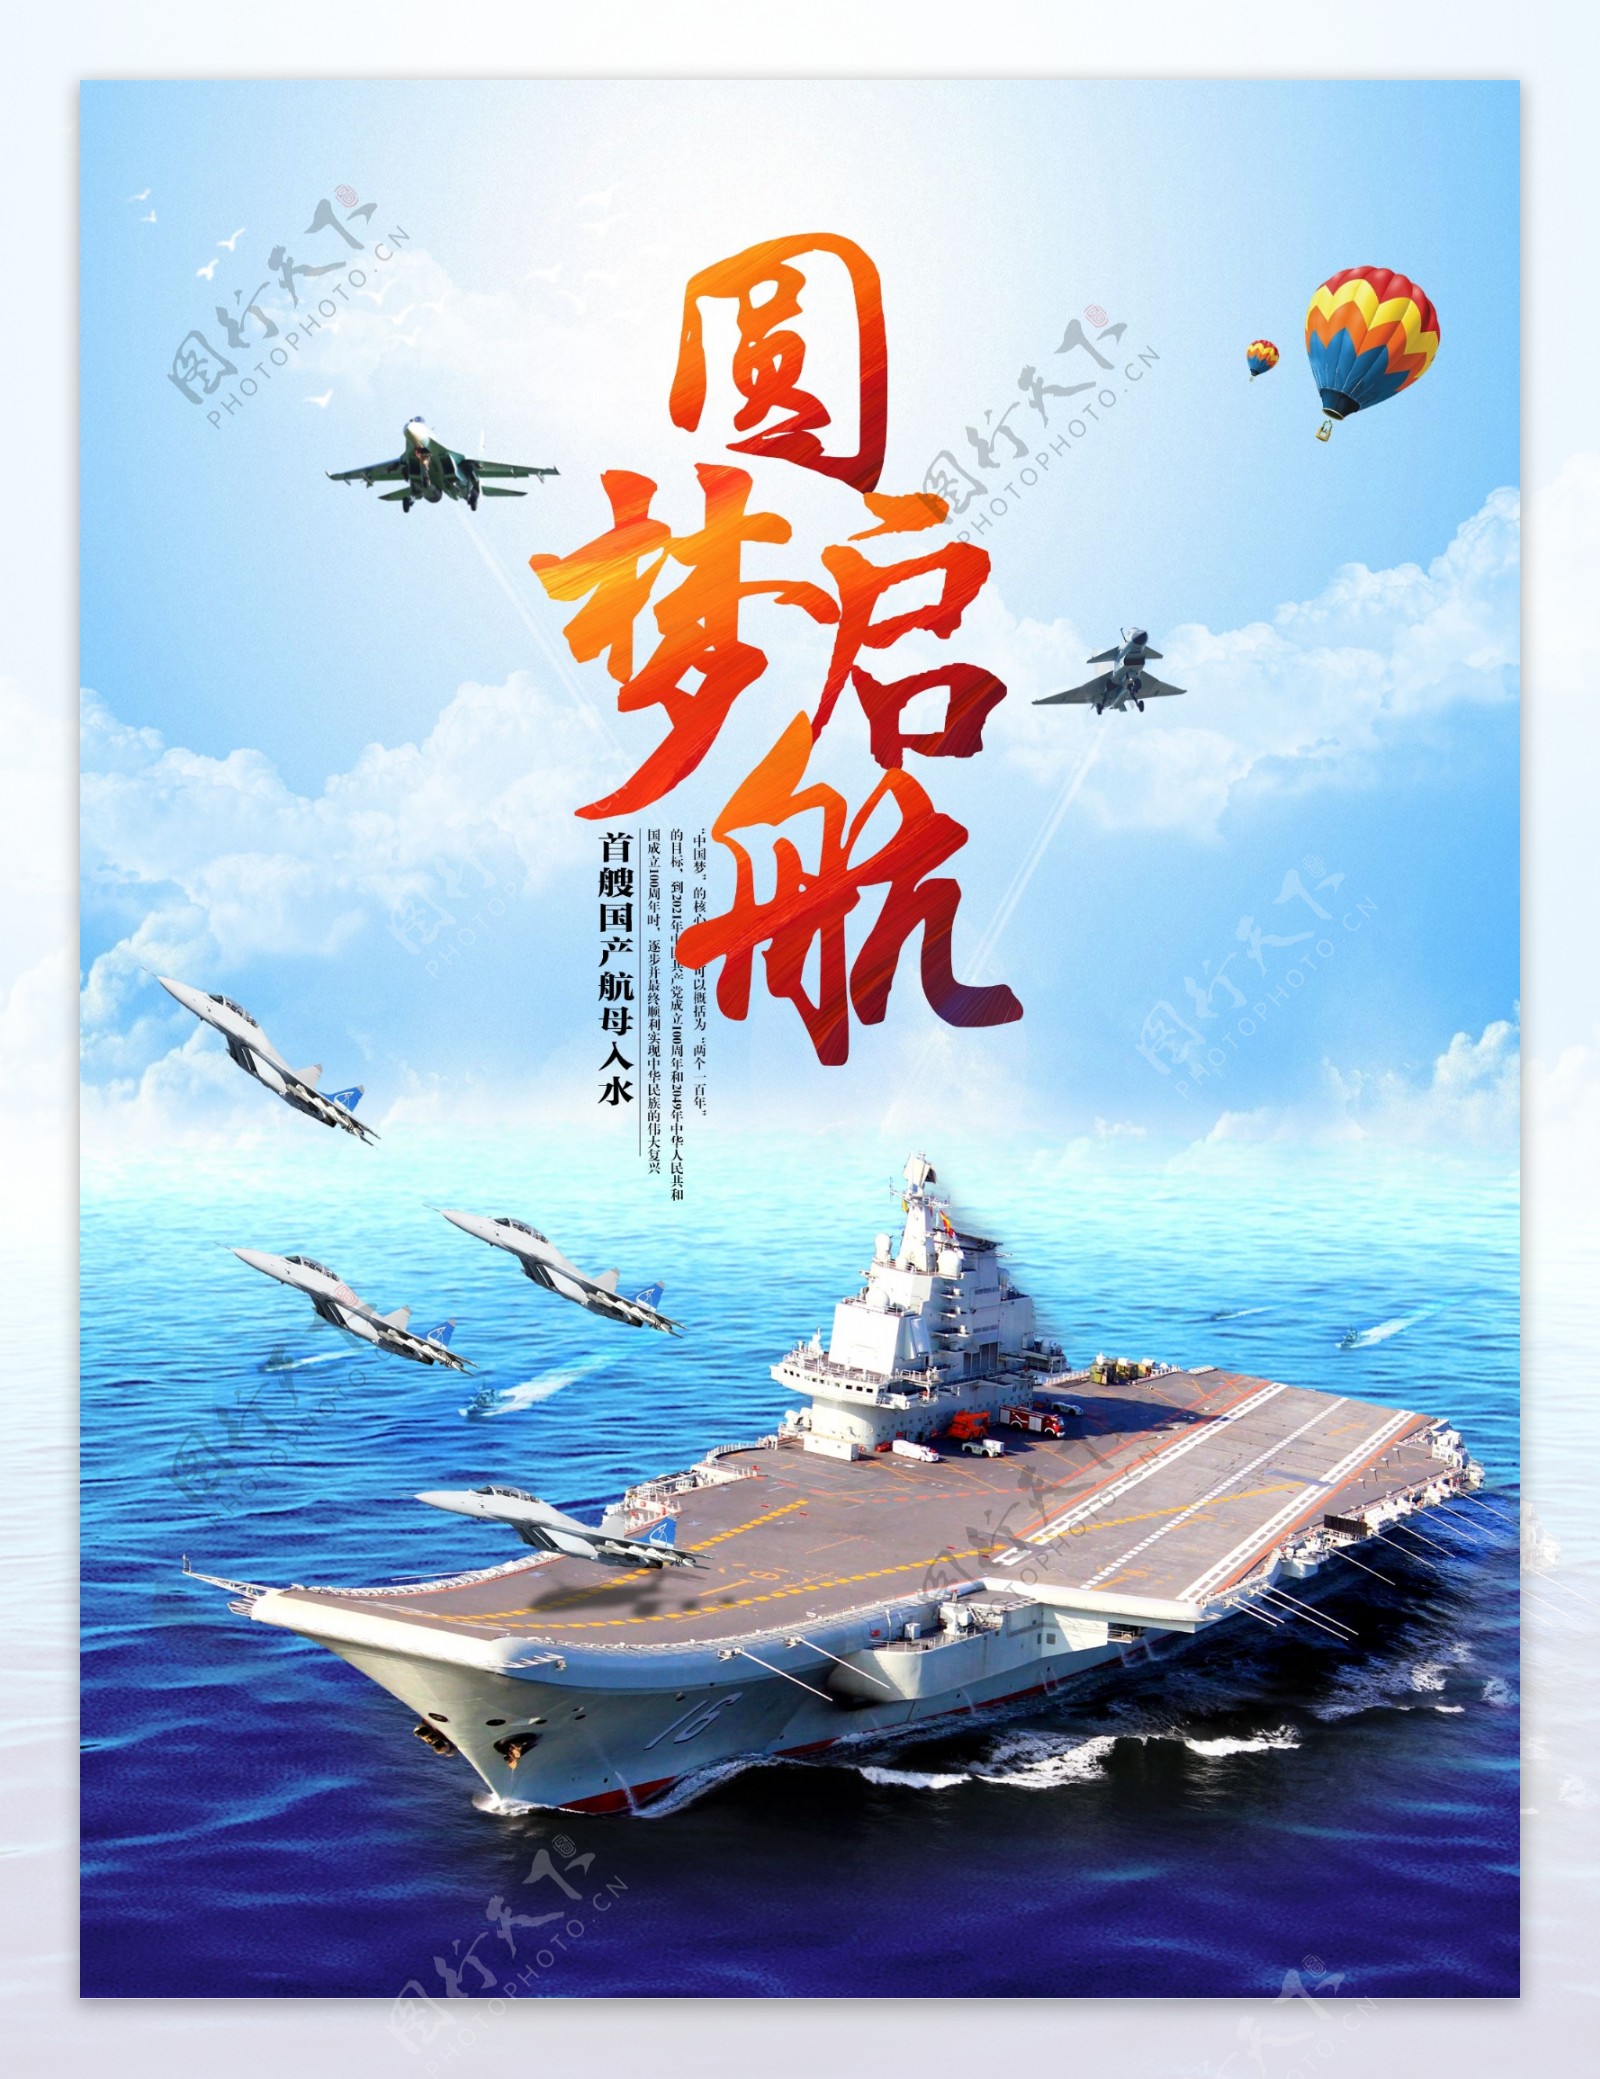 圆梦启航中国首艘航母入海宣传海报